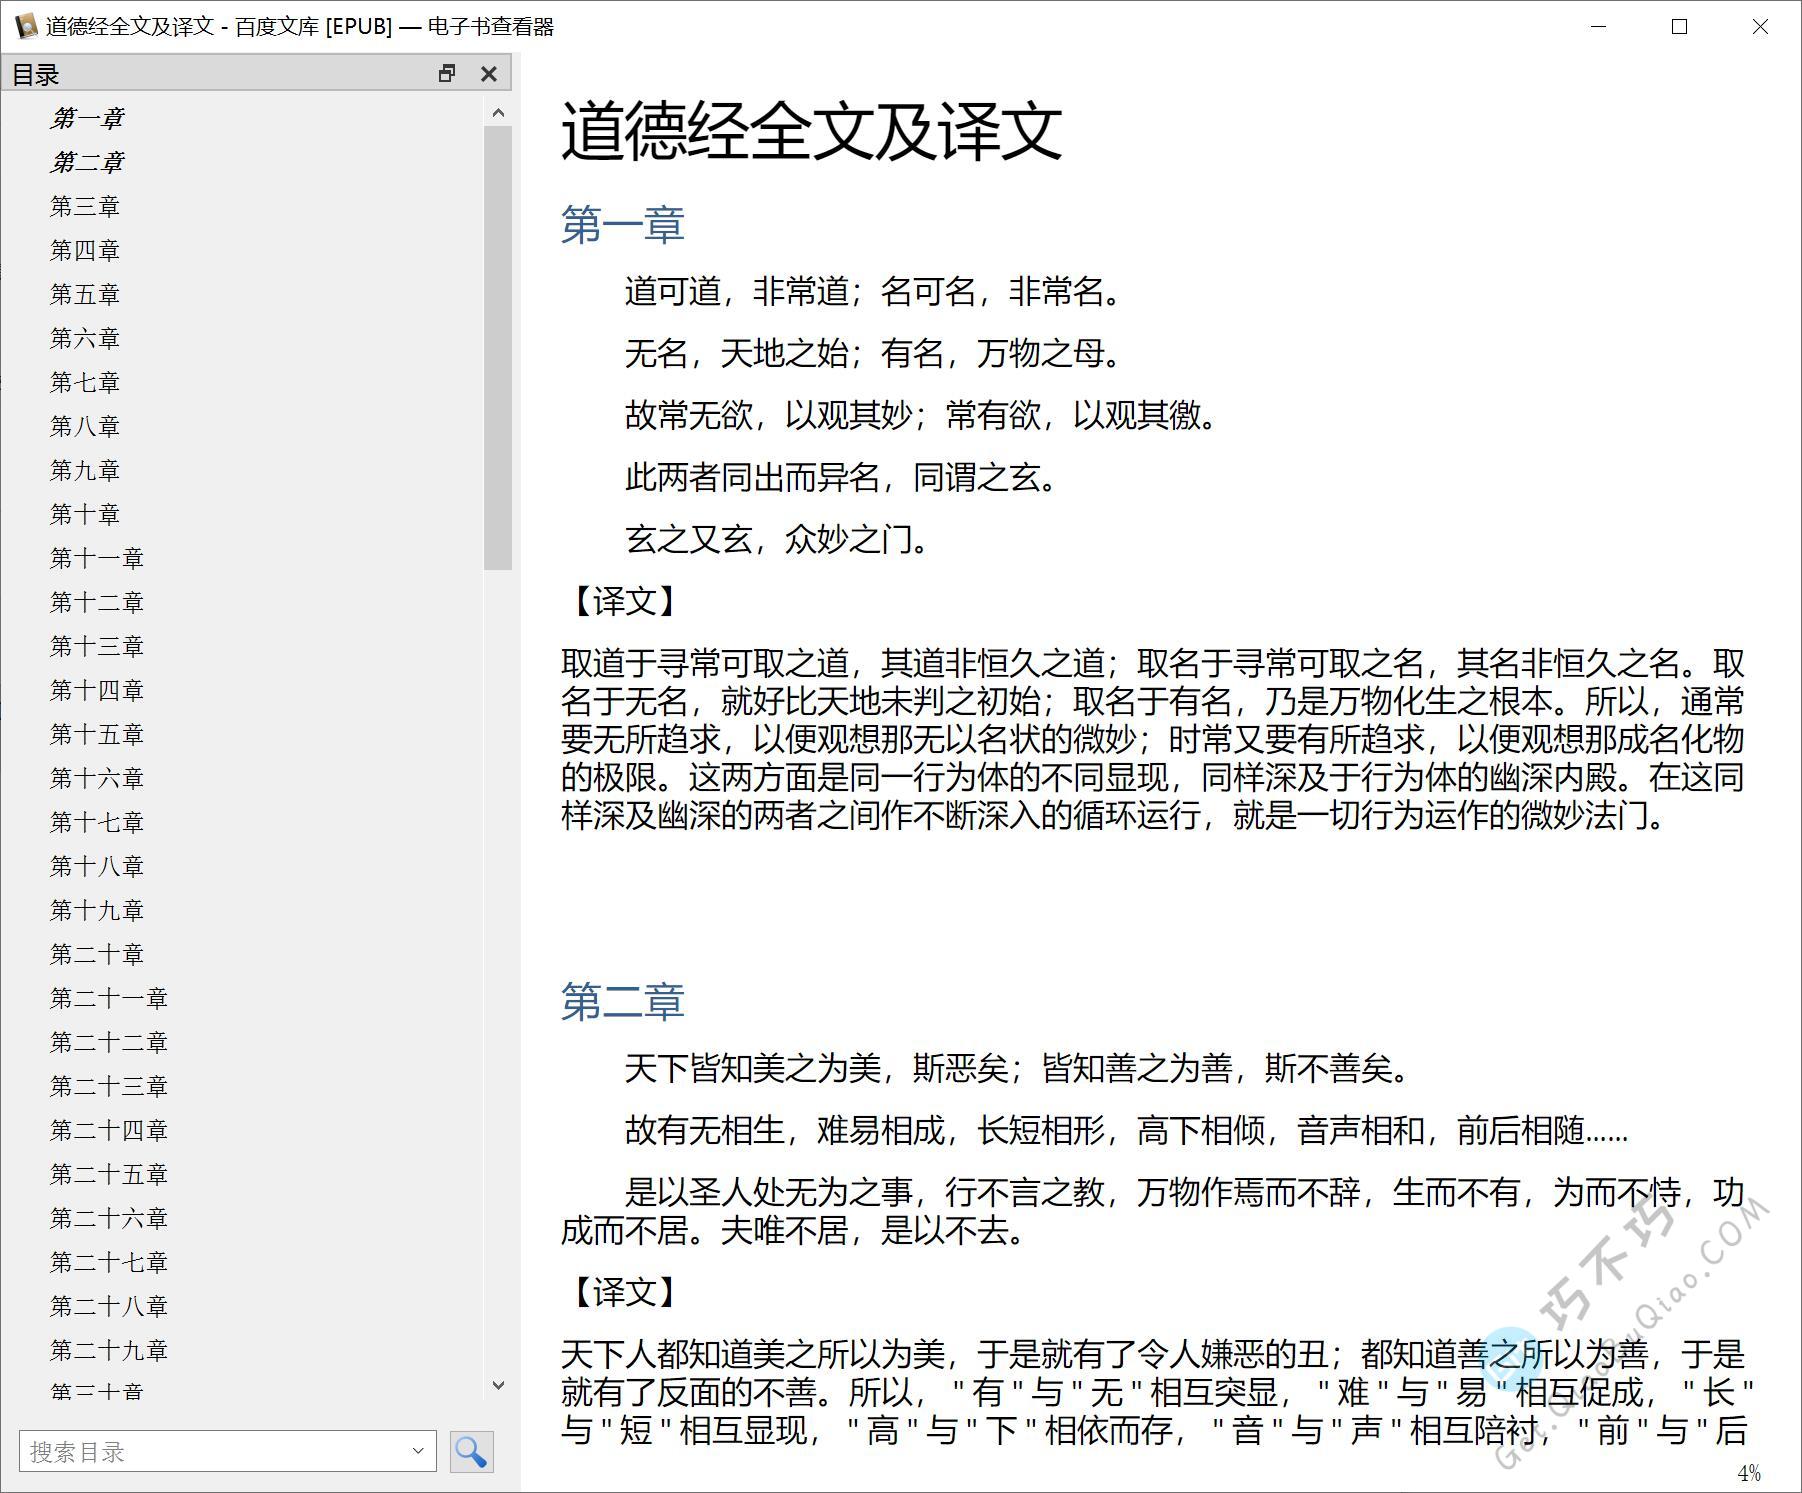 老子的国学经典《道德经》全文译文及难字注音精排EPUB、PDF、DOCX可打印版